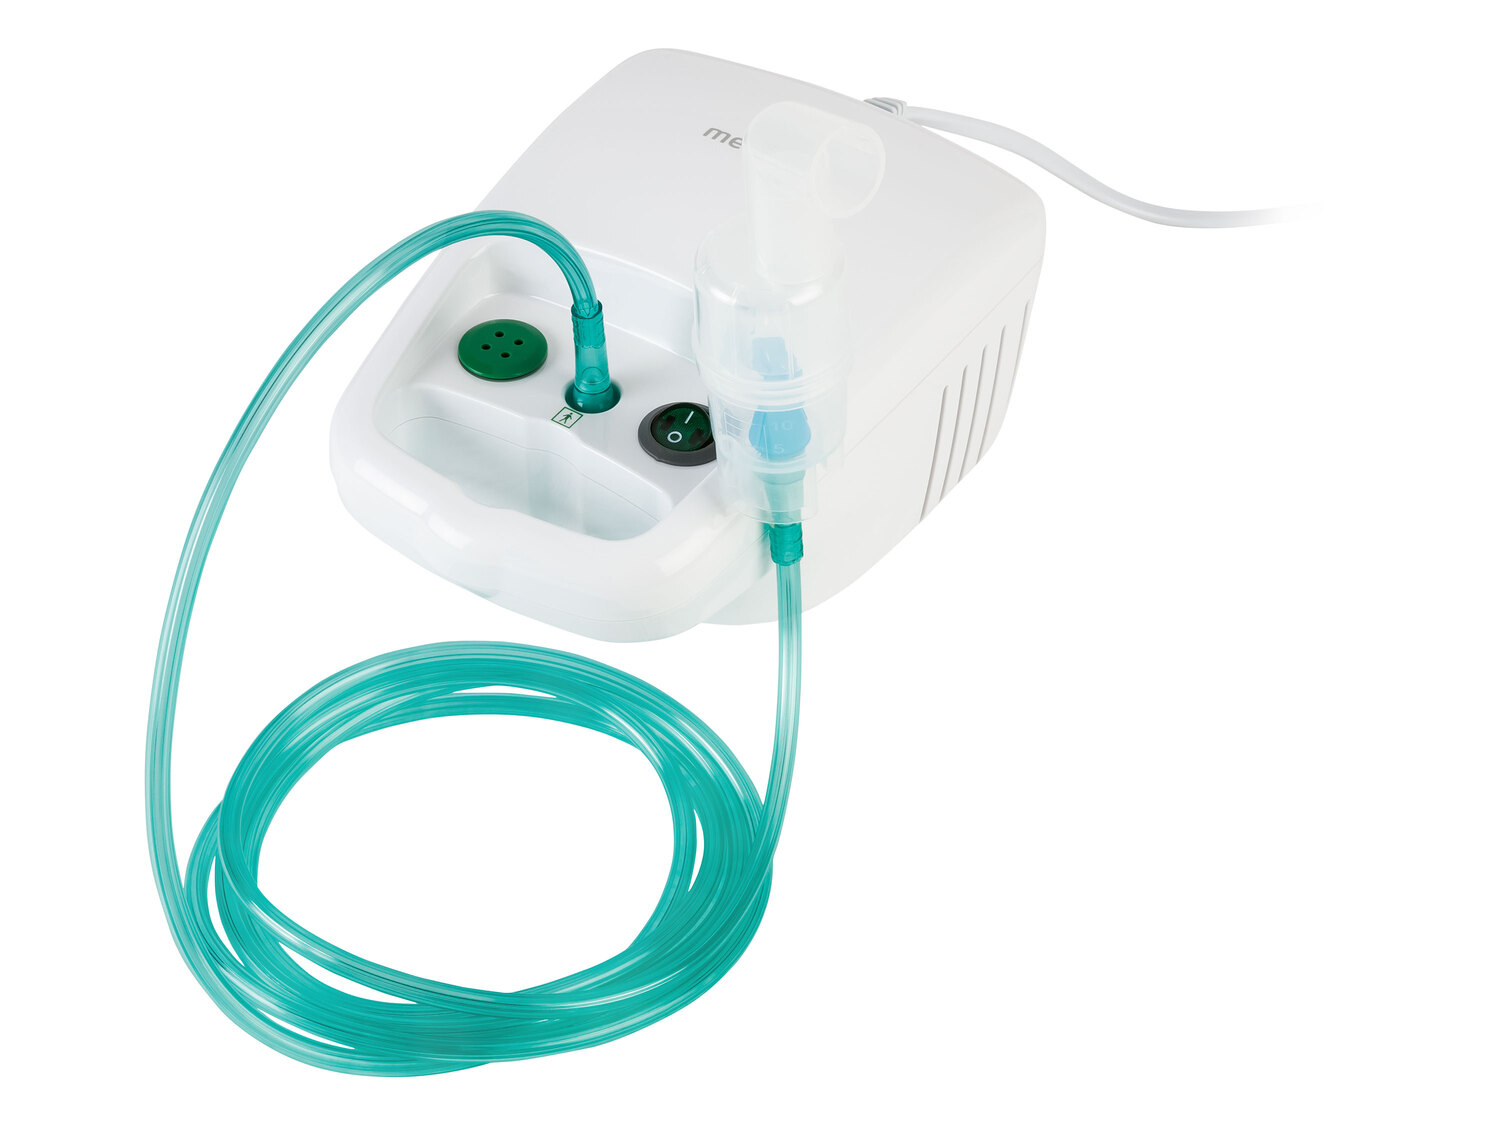 Inhalateur Medisana, le prix 24.99 € 
- Pour faire des inhalations en cas de ...